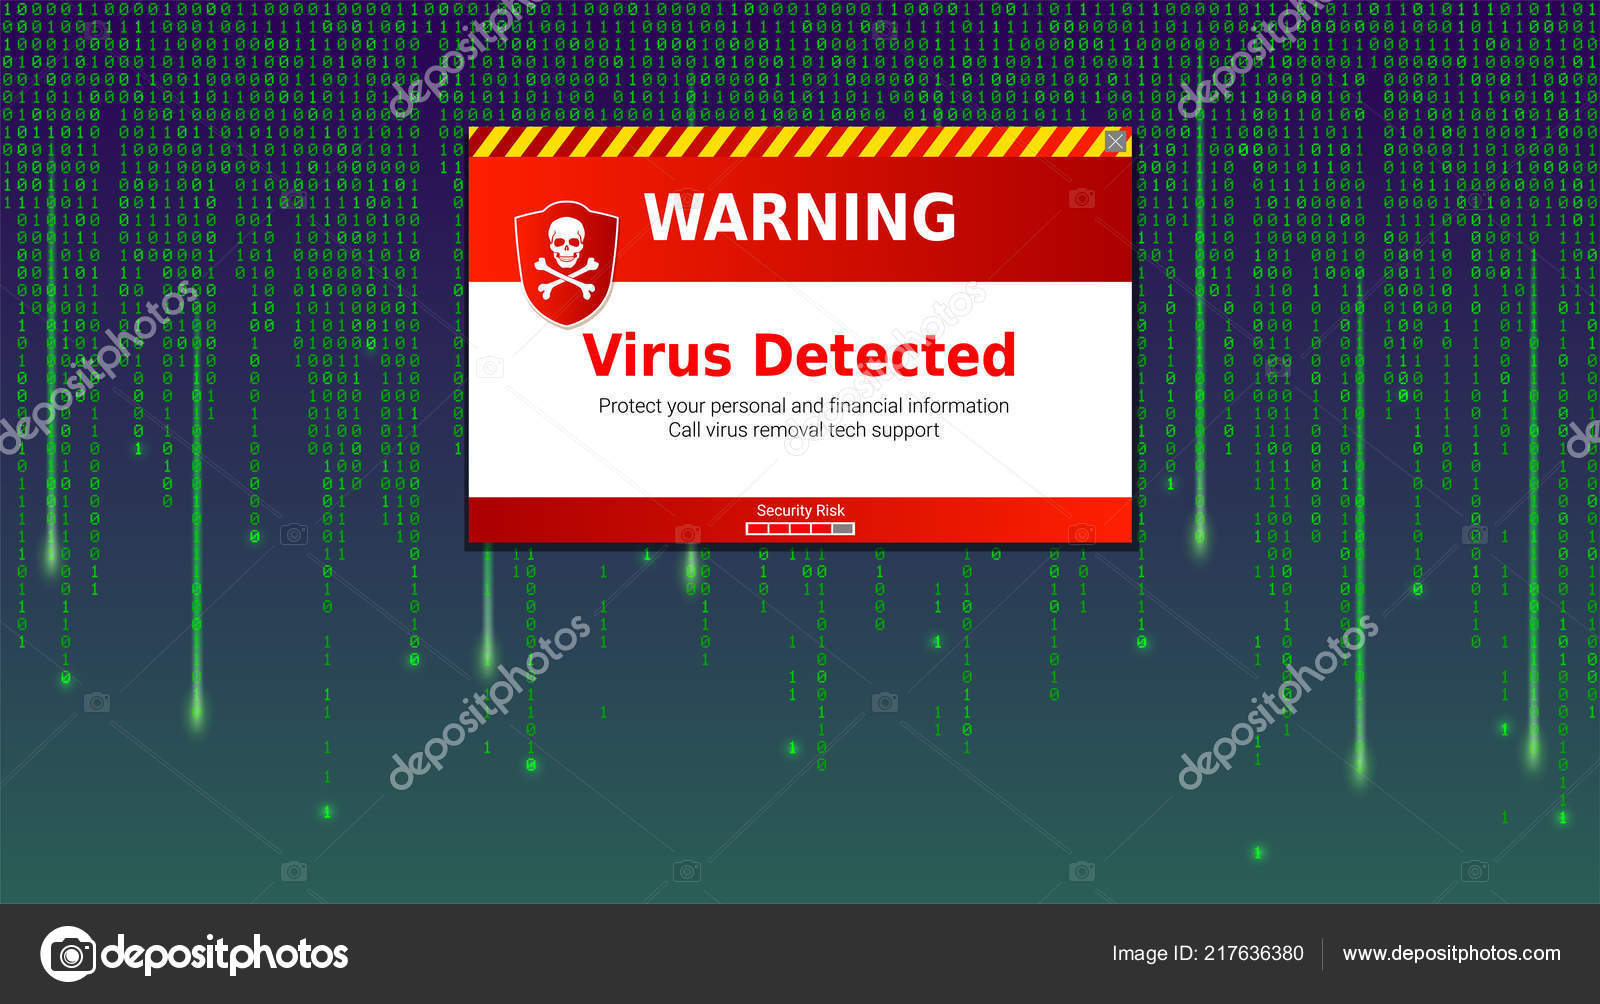 Virus Detected - 1600x1004 Wallpaper 